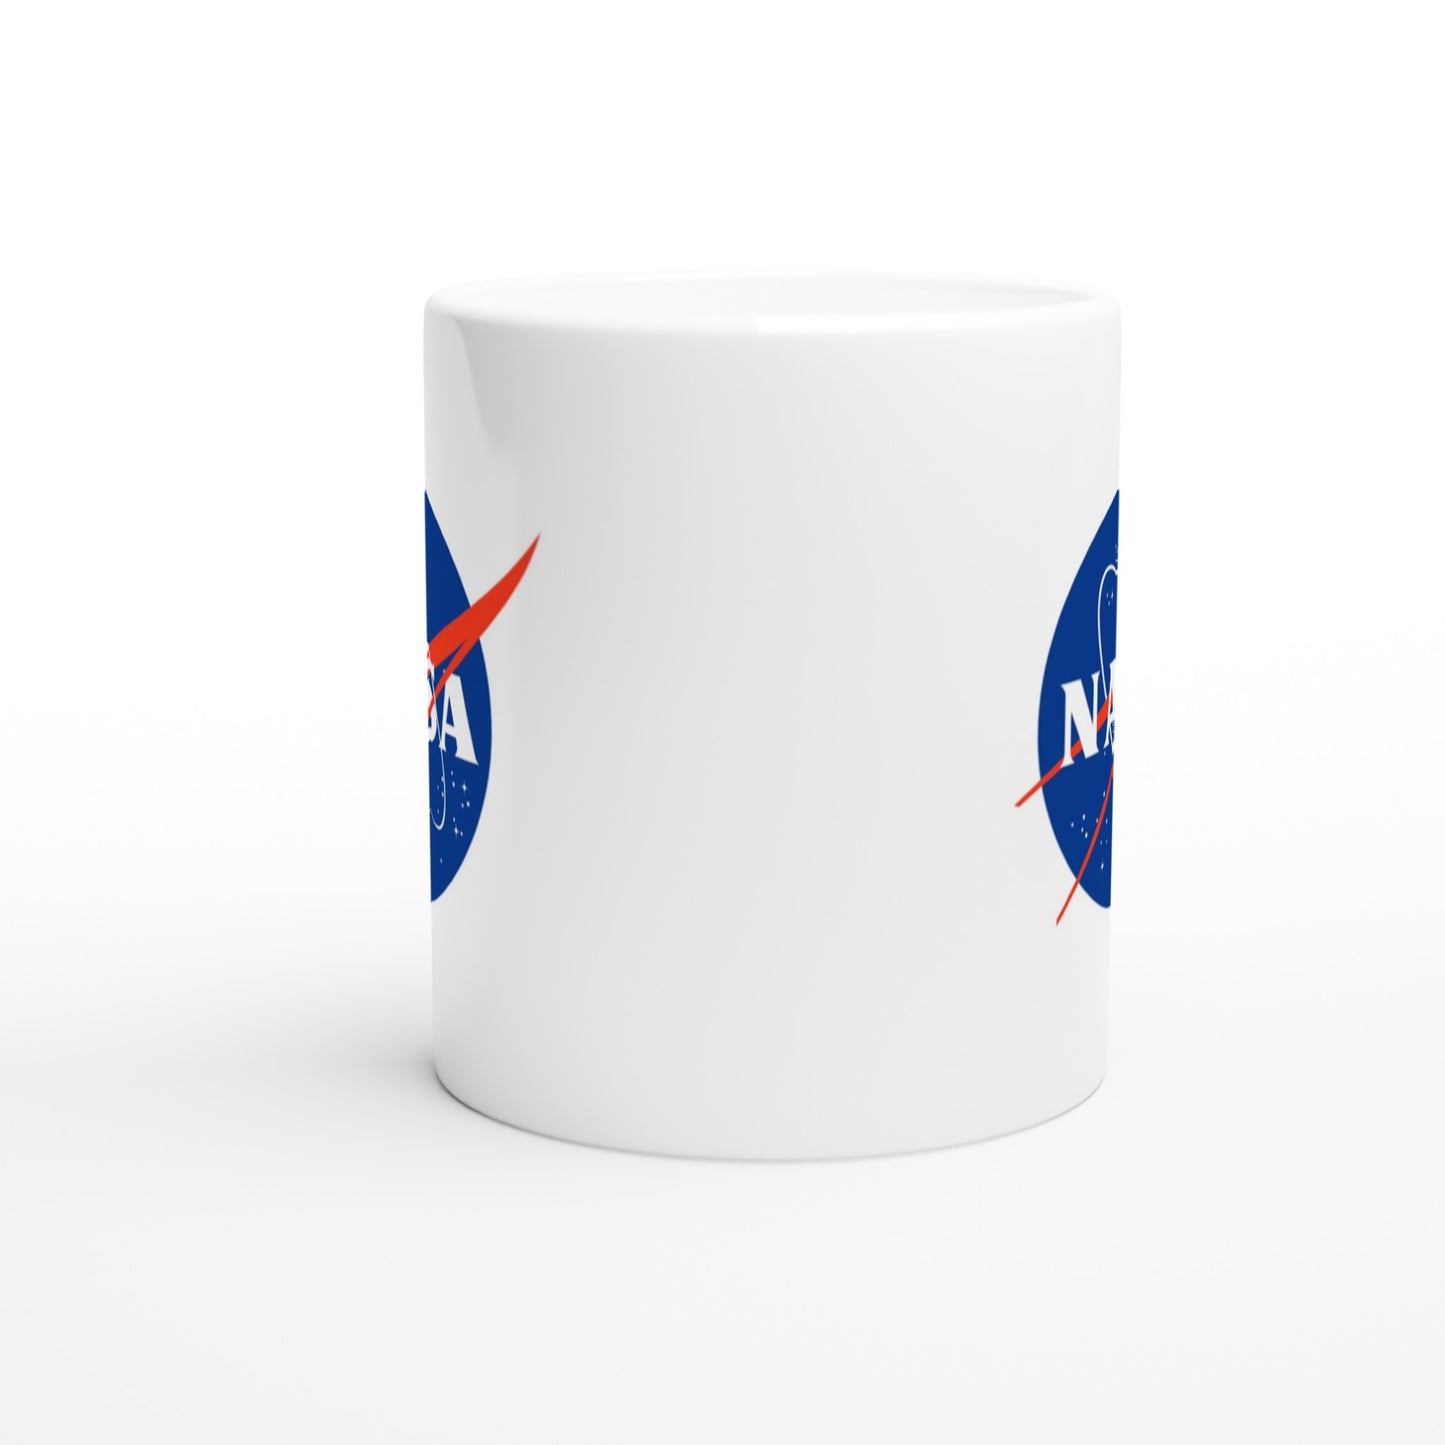 Offizielle NASA-Tasse – NASA-Logo – 330 ml, weiße Tasse